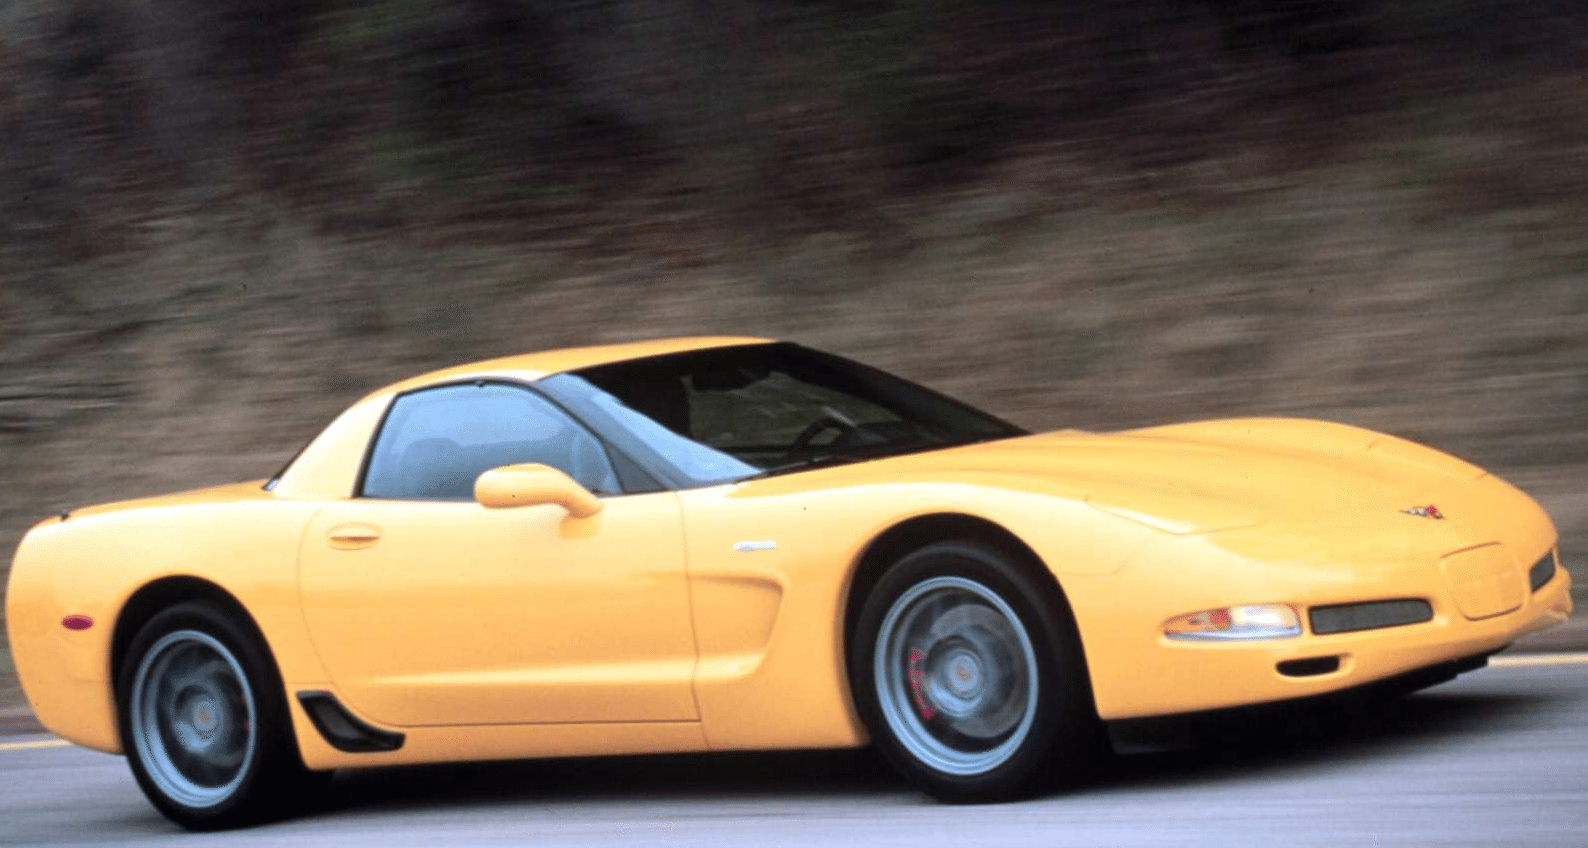 2001 Corvette